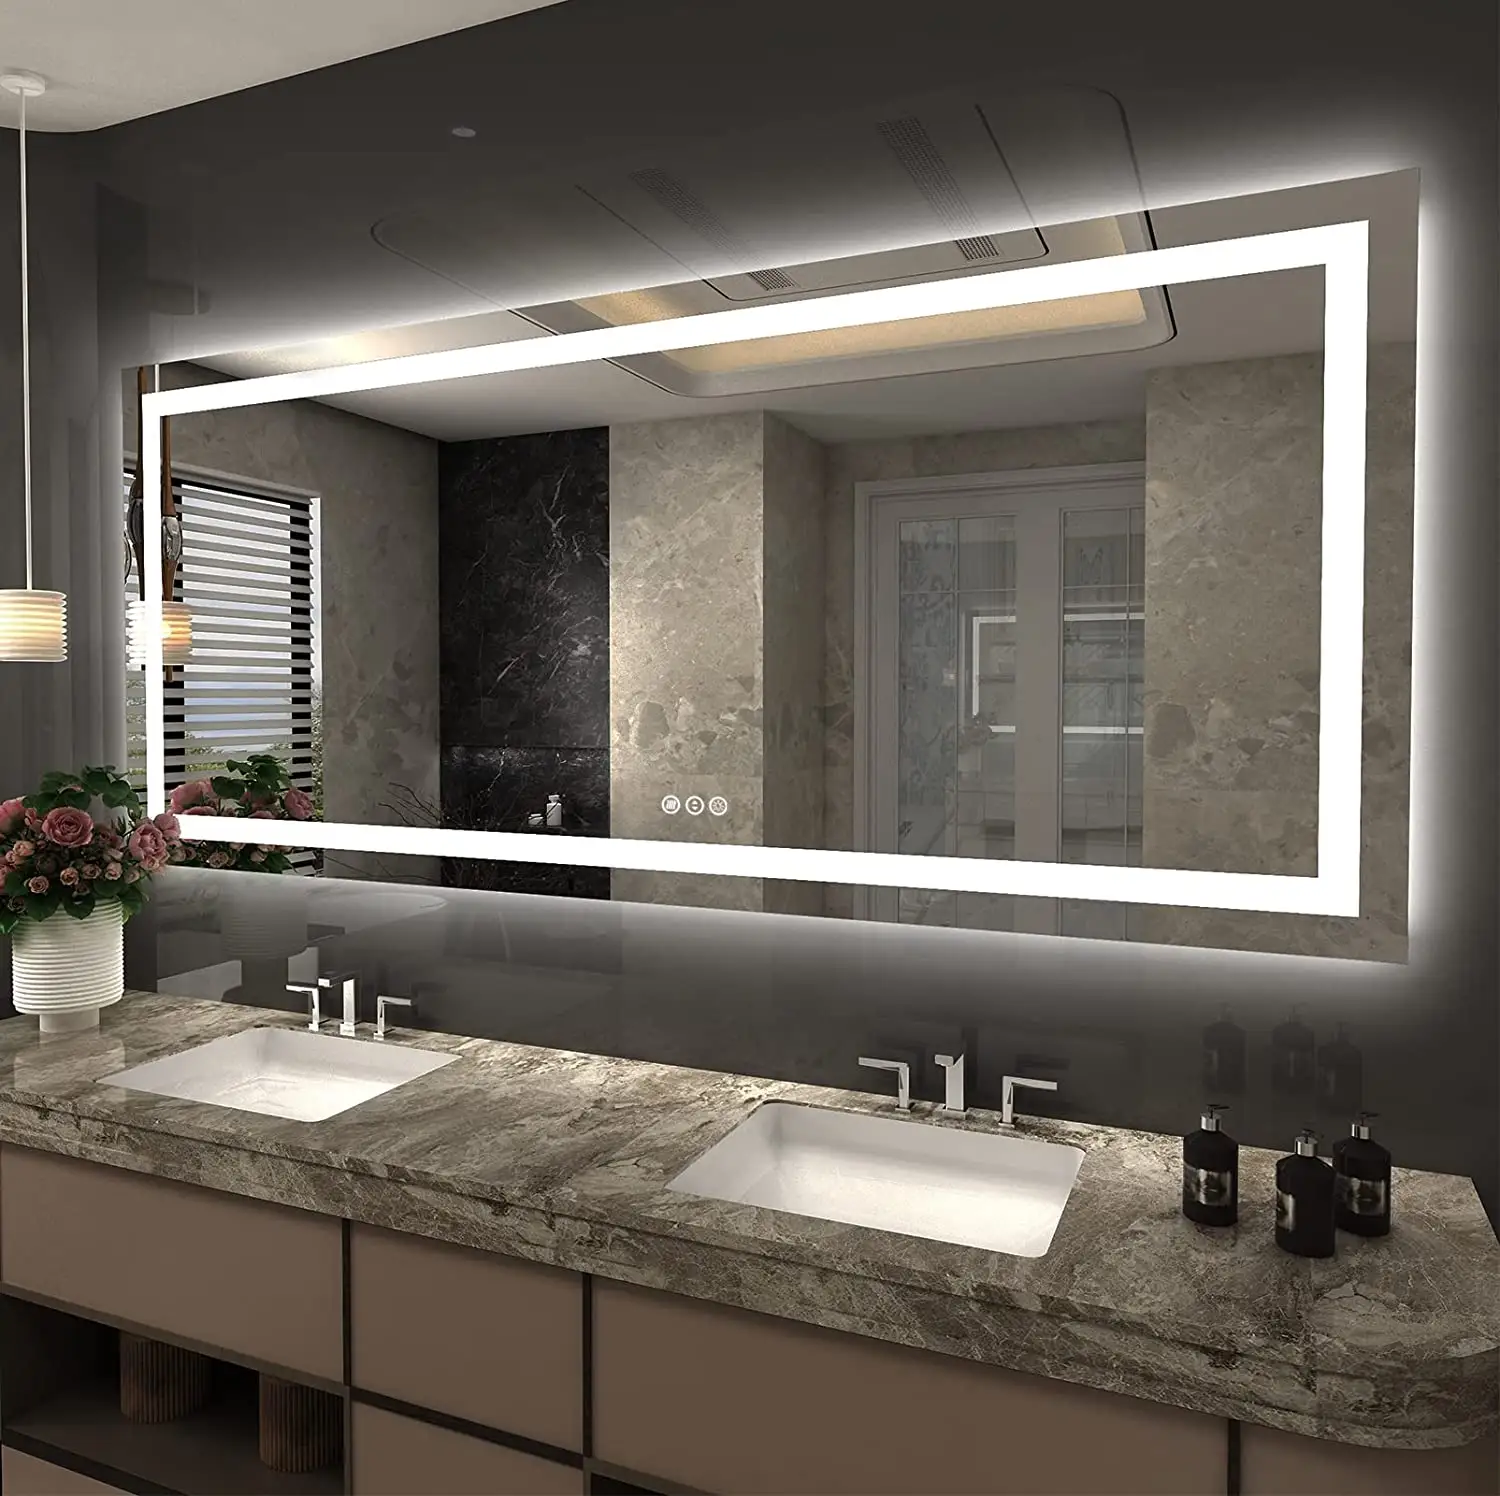 Kunden spezifische Wand montage Glas Magic Mirror Touchscreen Dimmer Bad leuchten Smart Led Badezimmers piegel